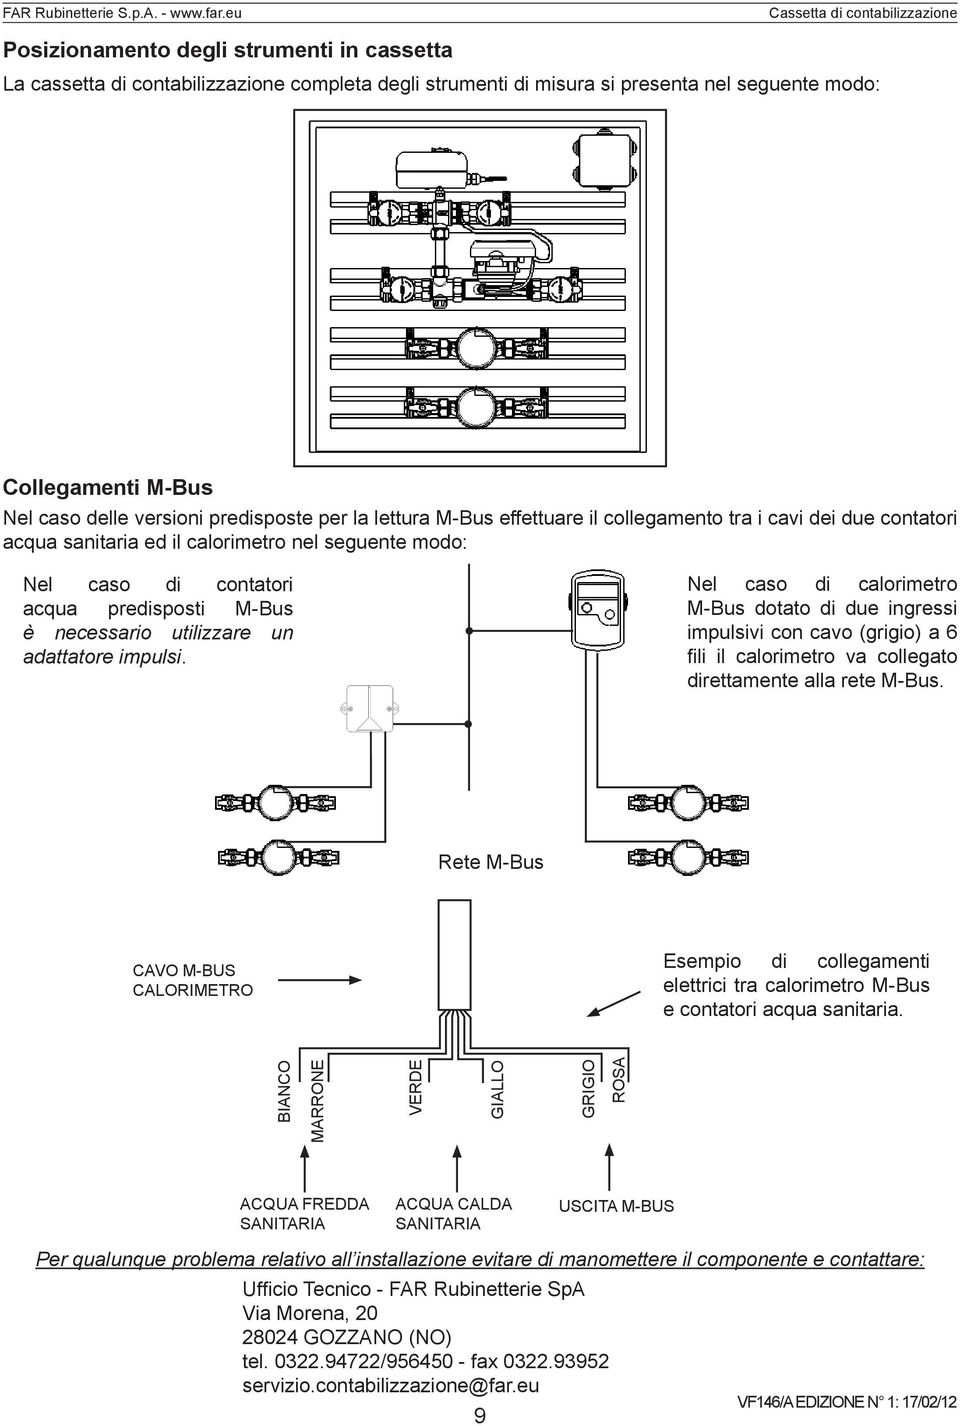 un adattatore impulsi. Nel caso di calorimetro M-Bus dotato di due ingressi impulsivi con cavo (grigio) a 6 fili il calorimetro va collegato direttamente alla rete M-Bus.